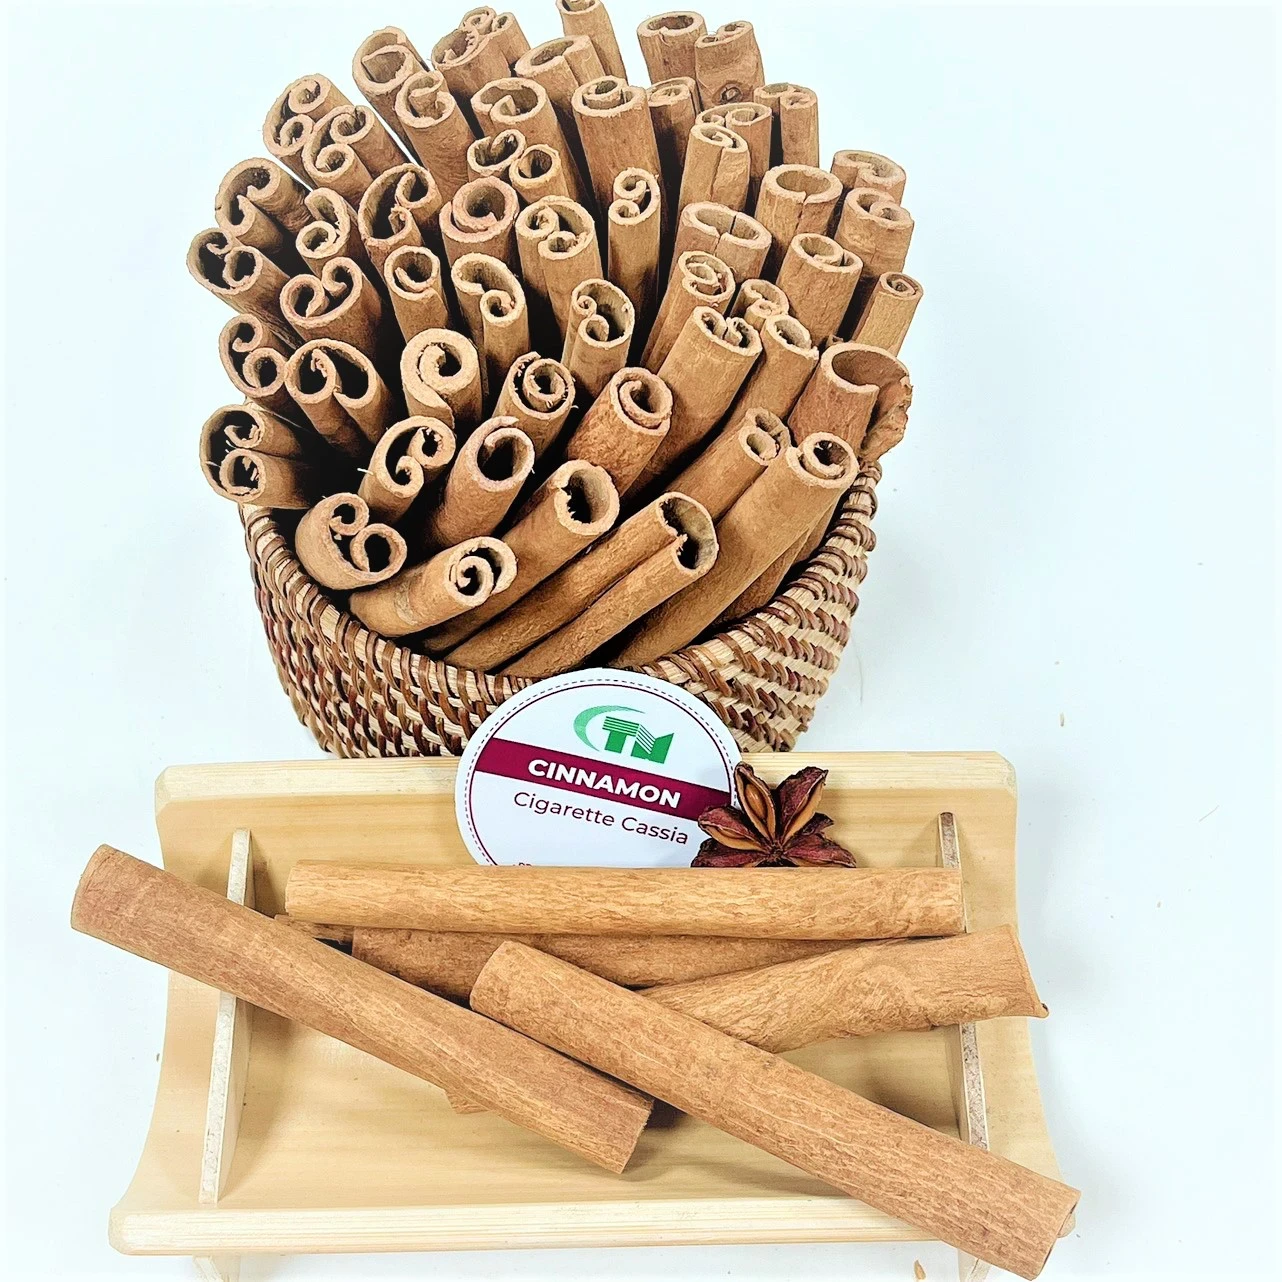 Cinnamon Sticks/ Cassia Cigarette